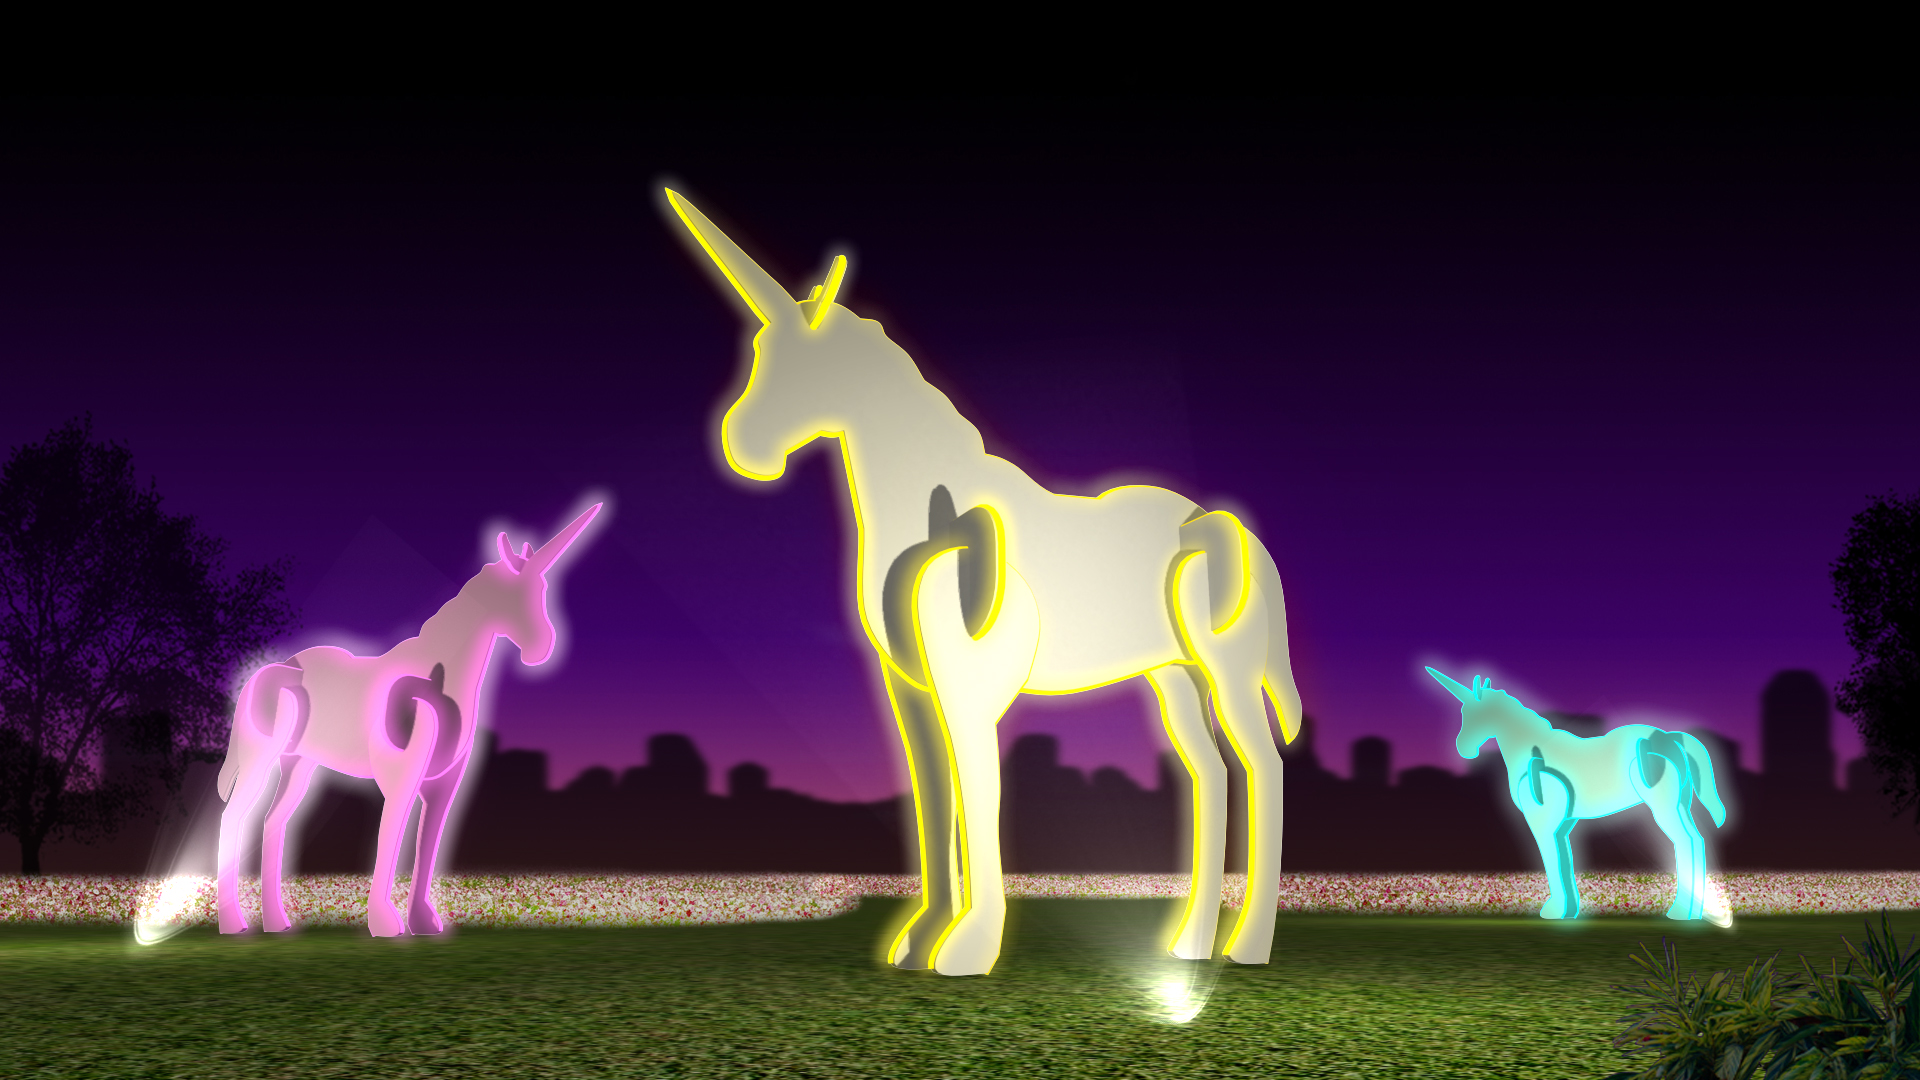 裝置藝術《魔幻之谷》(模擬圖)，呈現獨角獸自由奔跑與遊戲。圖片來源：新北市政府